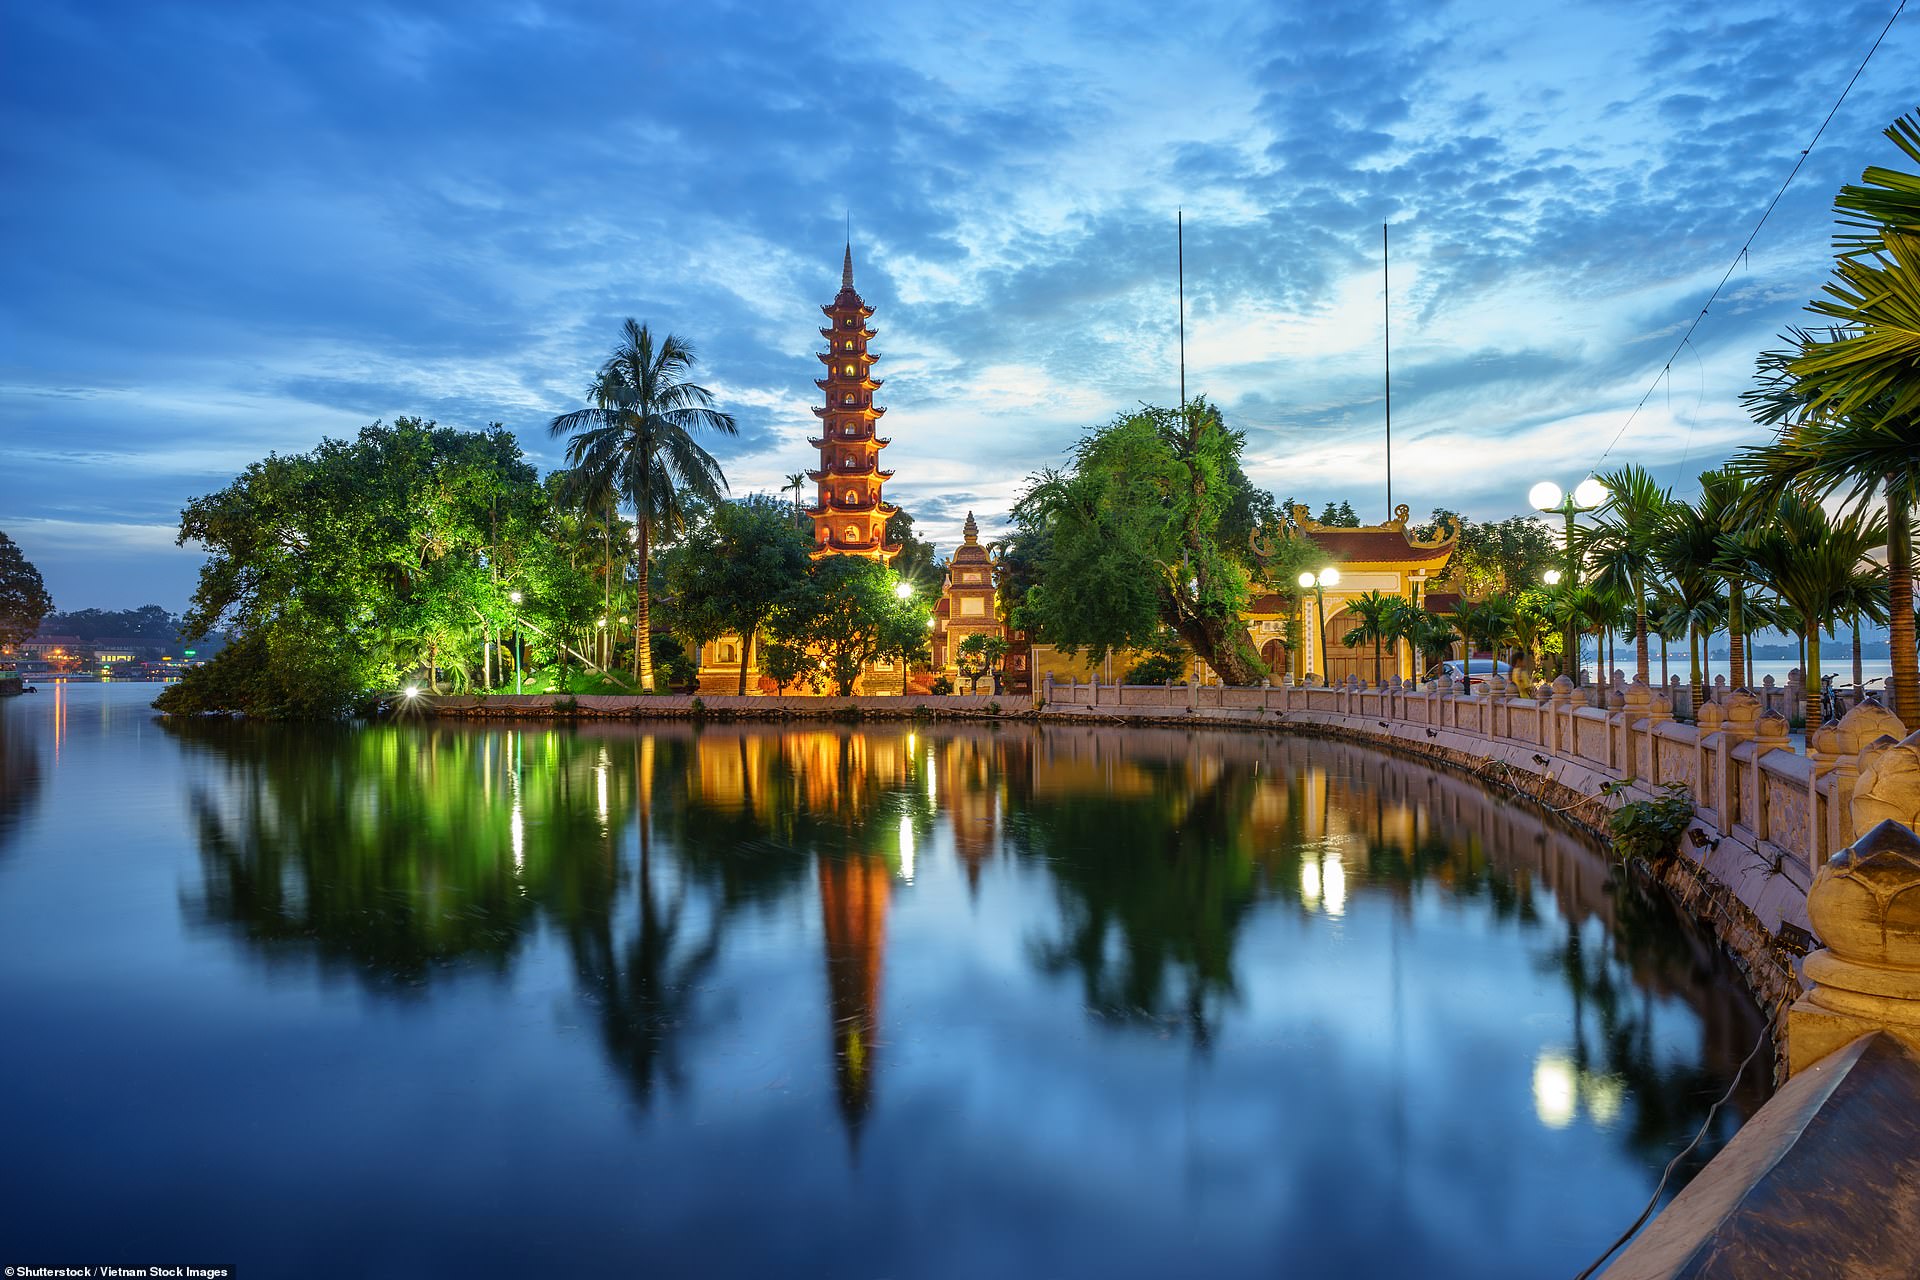 Chùa Trấn Quốc nằm giữa lòng thủ đô Hà Nội. Ngôi chùa này có từ thế kỷ 6 và là điểm hút khách du lịch.